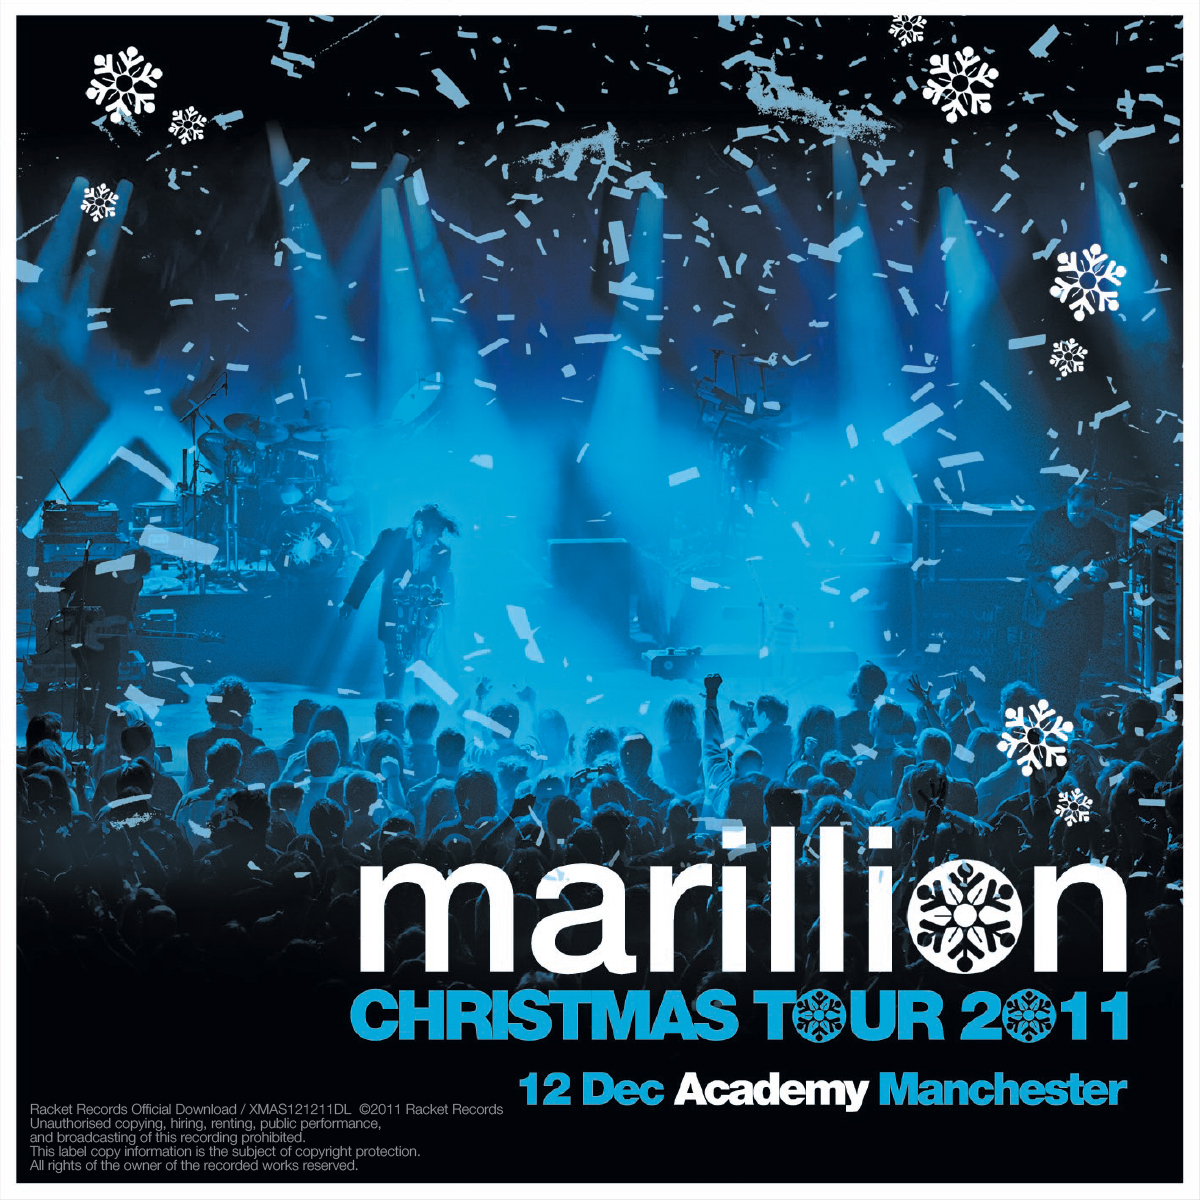 Academy, Manchester, UK<br>12th December 2011 Live Download 320kbps